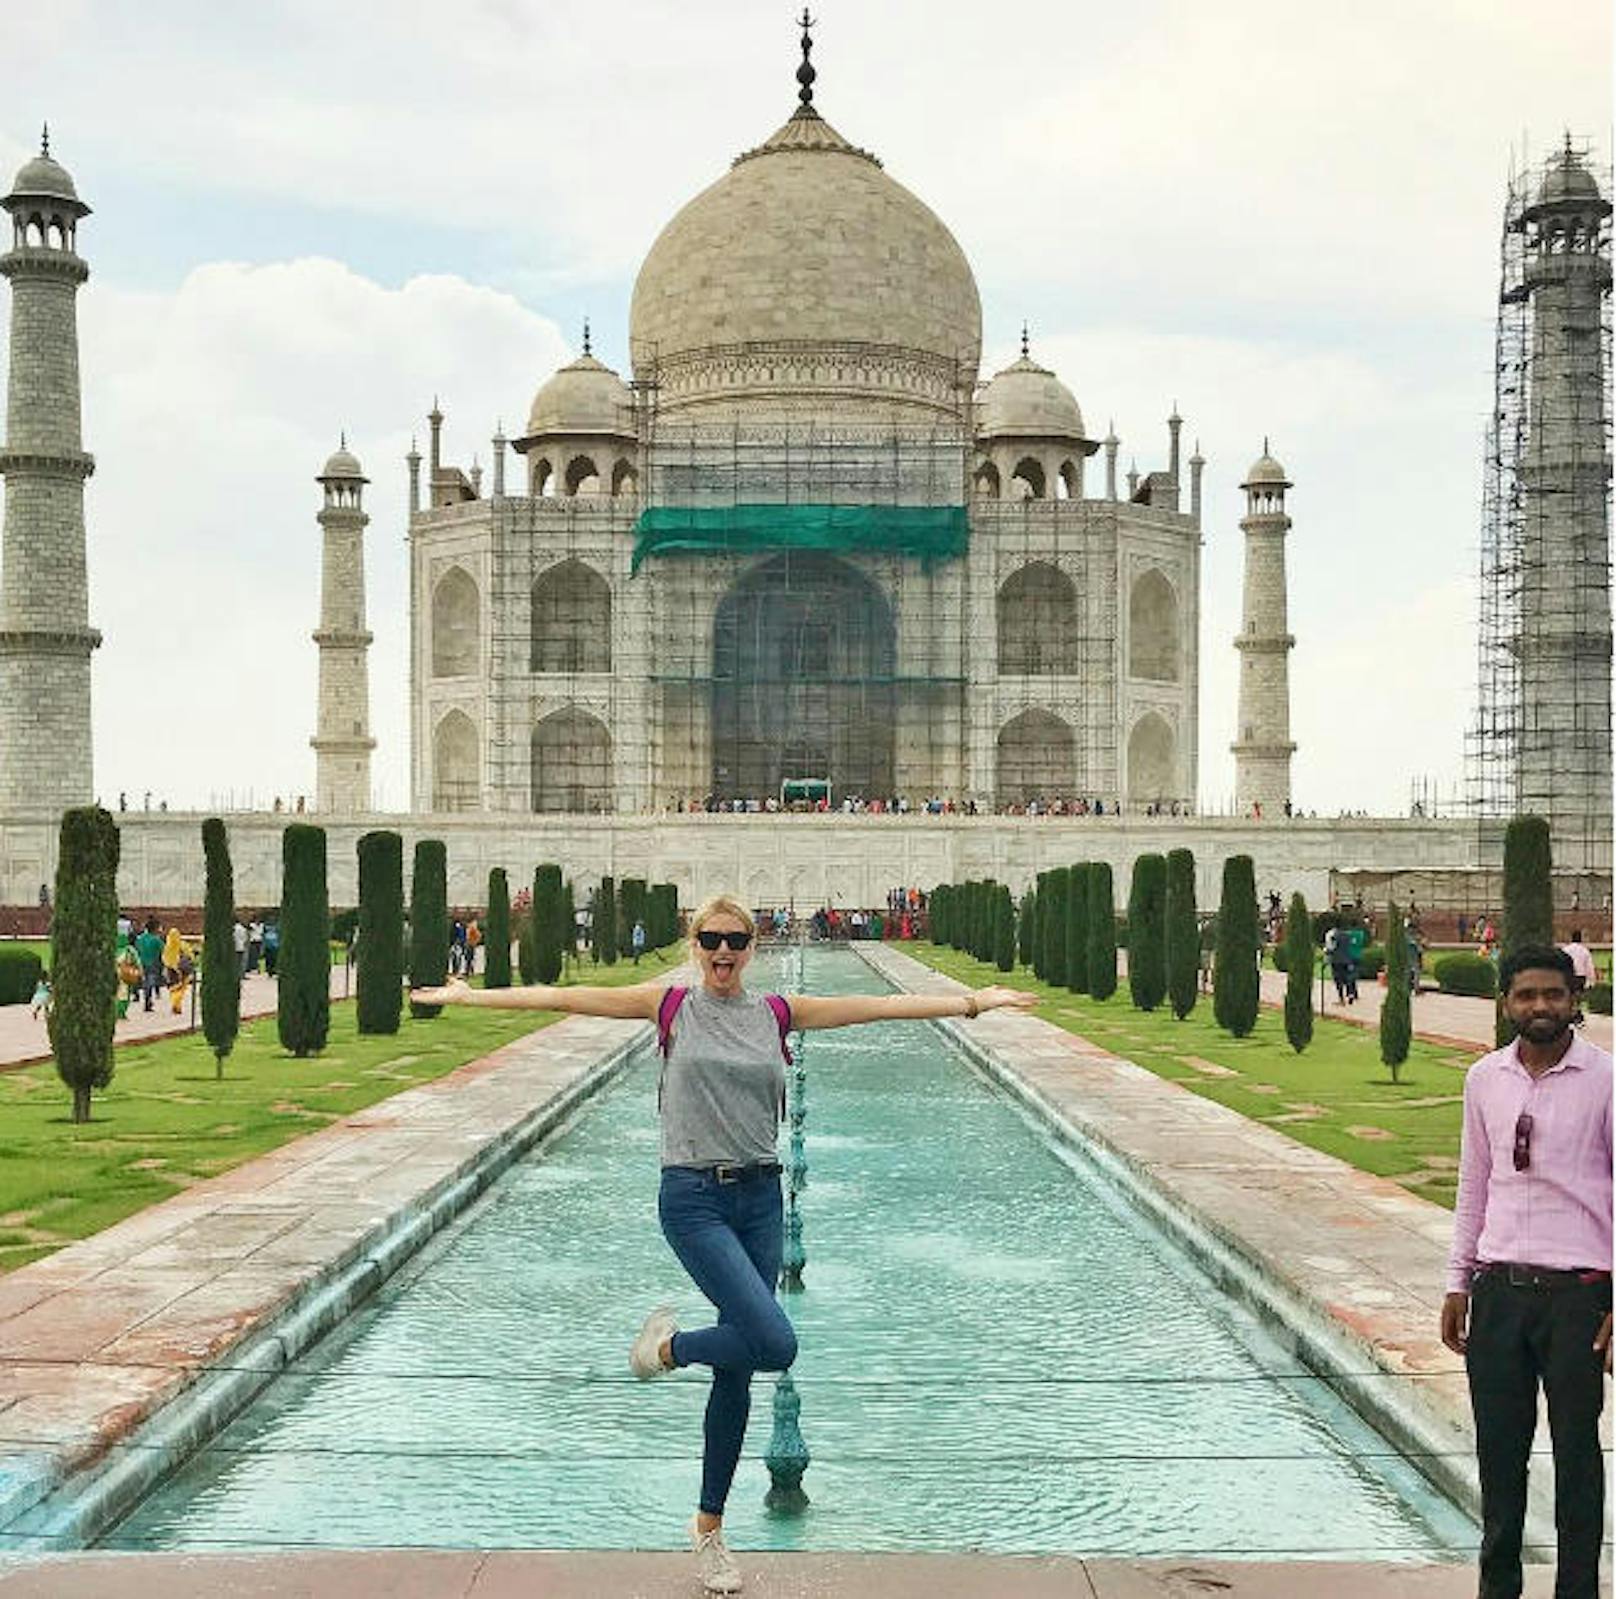 19.07.2017: Model Lena Gercke freut sich darüber, endlich einen Punkt auf ihrer Bucketlist abhaken zu können. "Ich sehe wie der ärgste Tourist aus, aber das ist mir egal, ich habe eines der sieben Weltwunder gesehen", schreibt die hübsche Blondine zu einem Foto, das sie vor dem Taj Mahal in Indien zeigt.